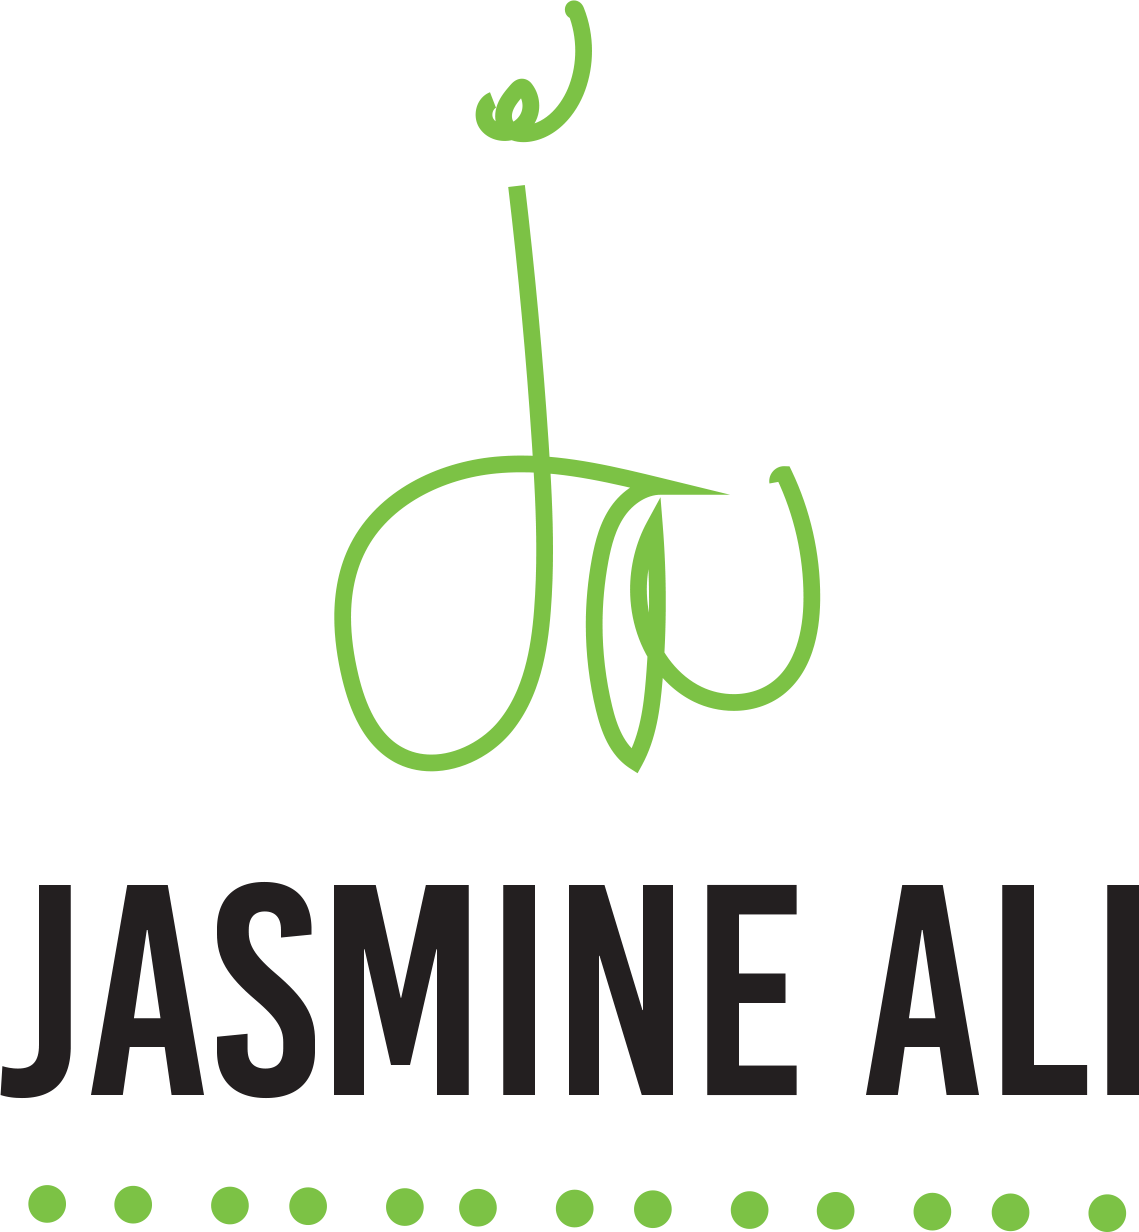 Jasmine Ali